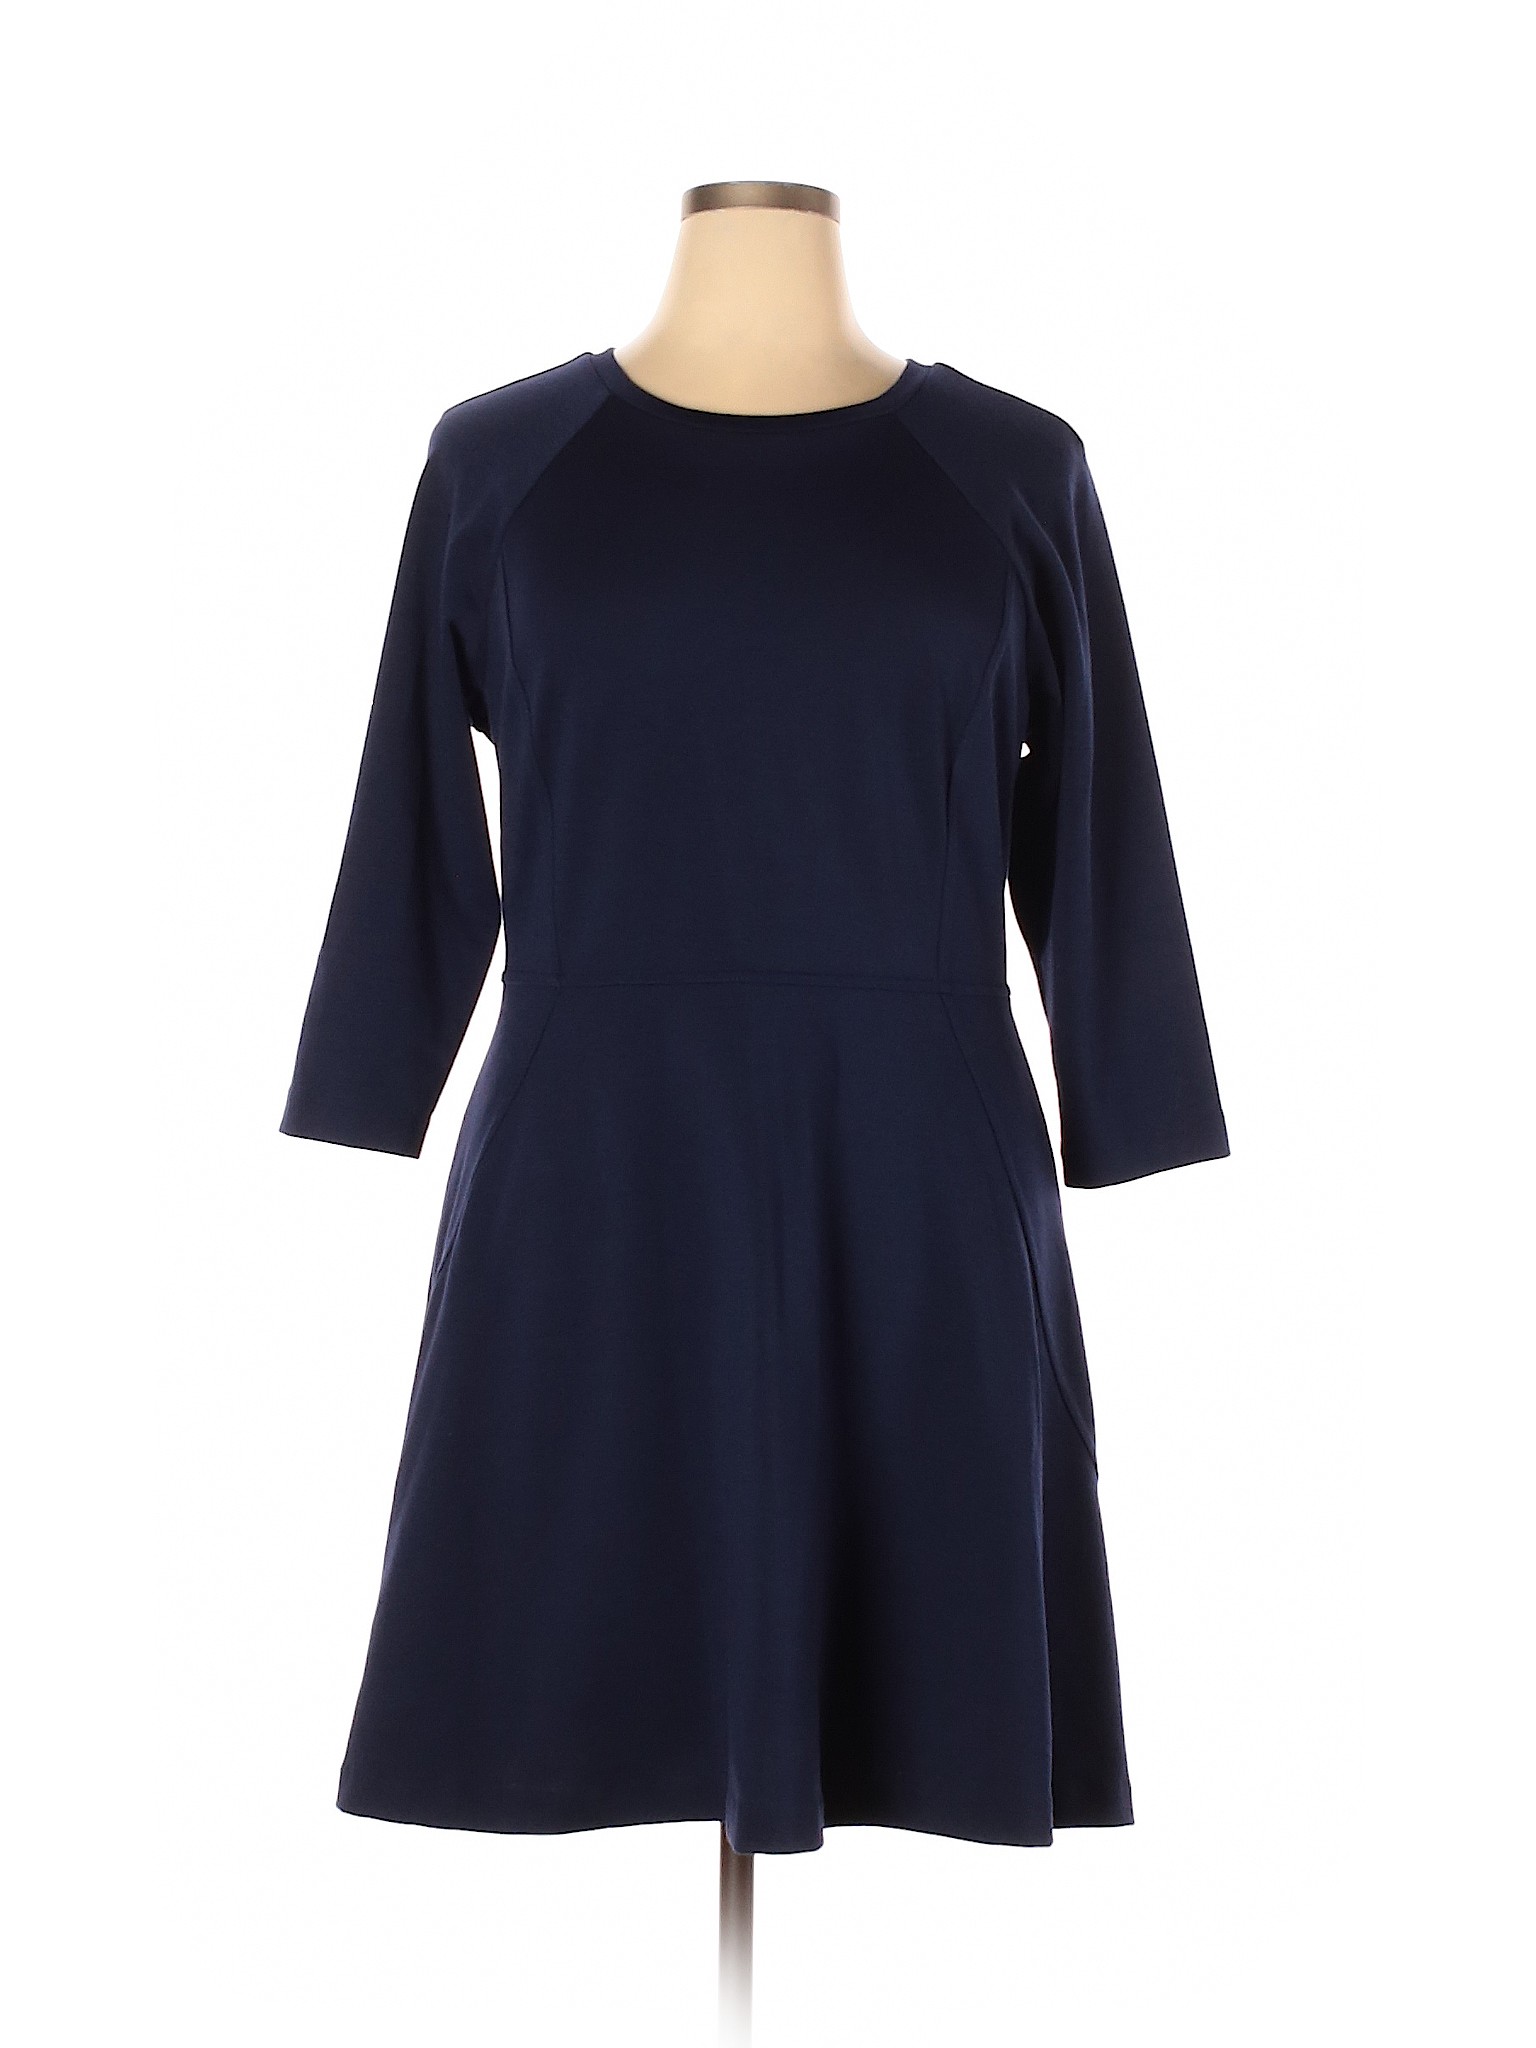 Daisy Fuentes Women Blue Casual Dress XL | eBay